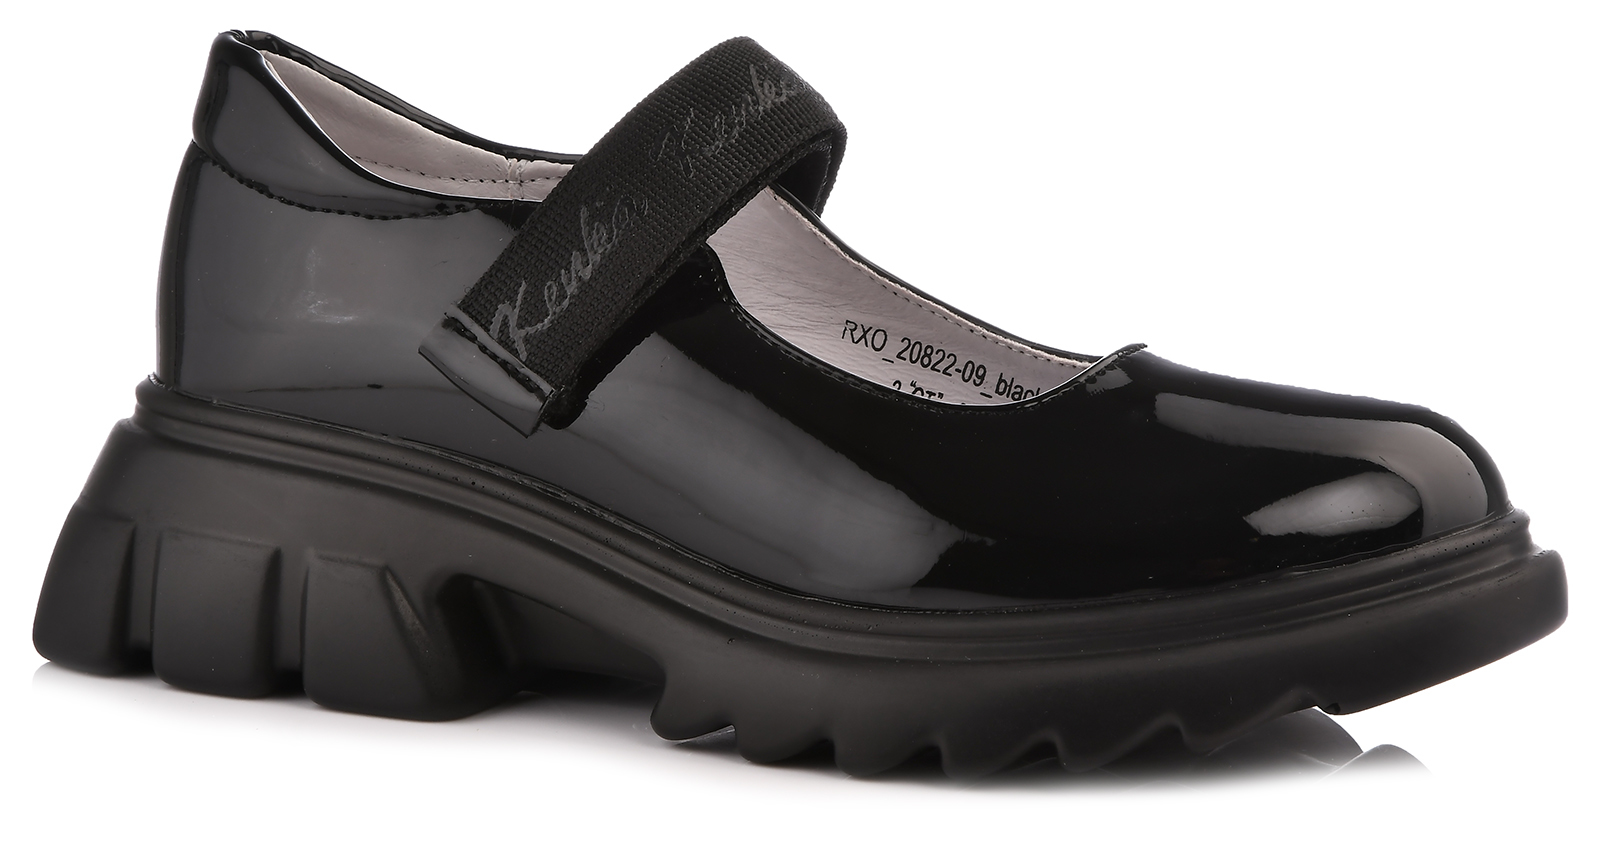 Туфли Kenka для девочек, размер 35, RXO_20822-09_black